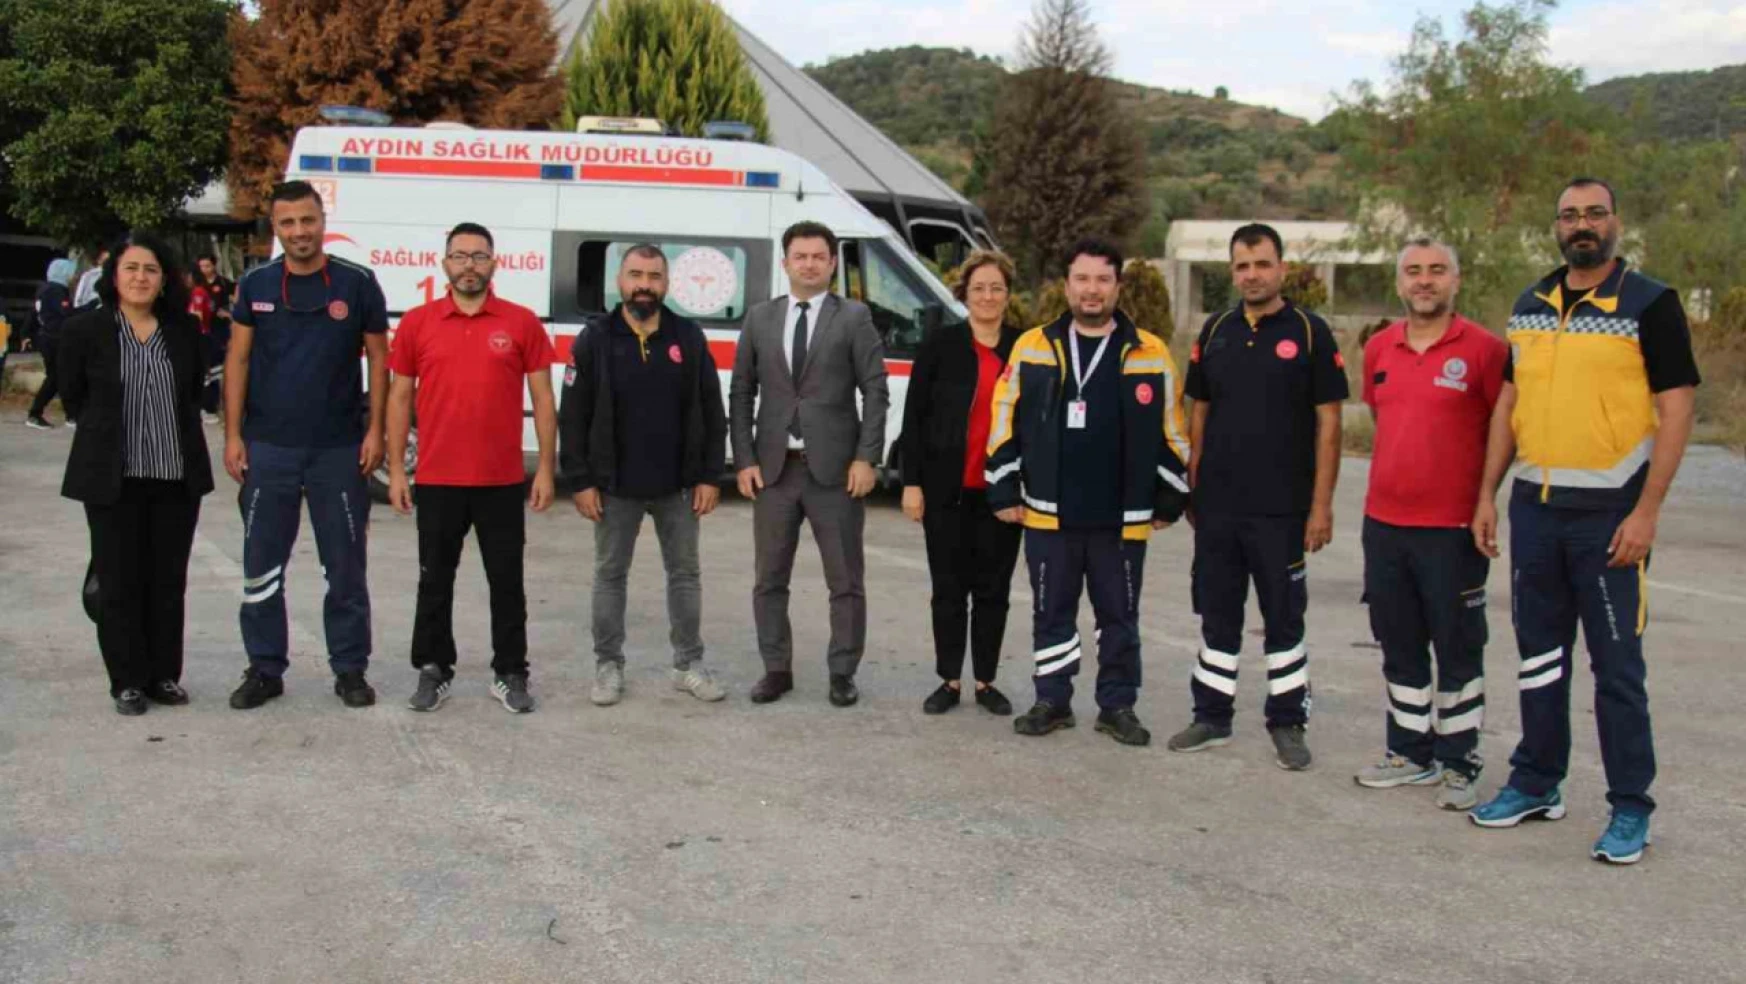 Aydın'da seçimde 260 sağlık personeli görev yapacak